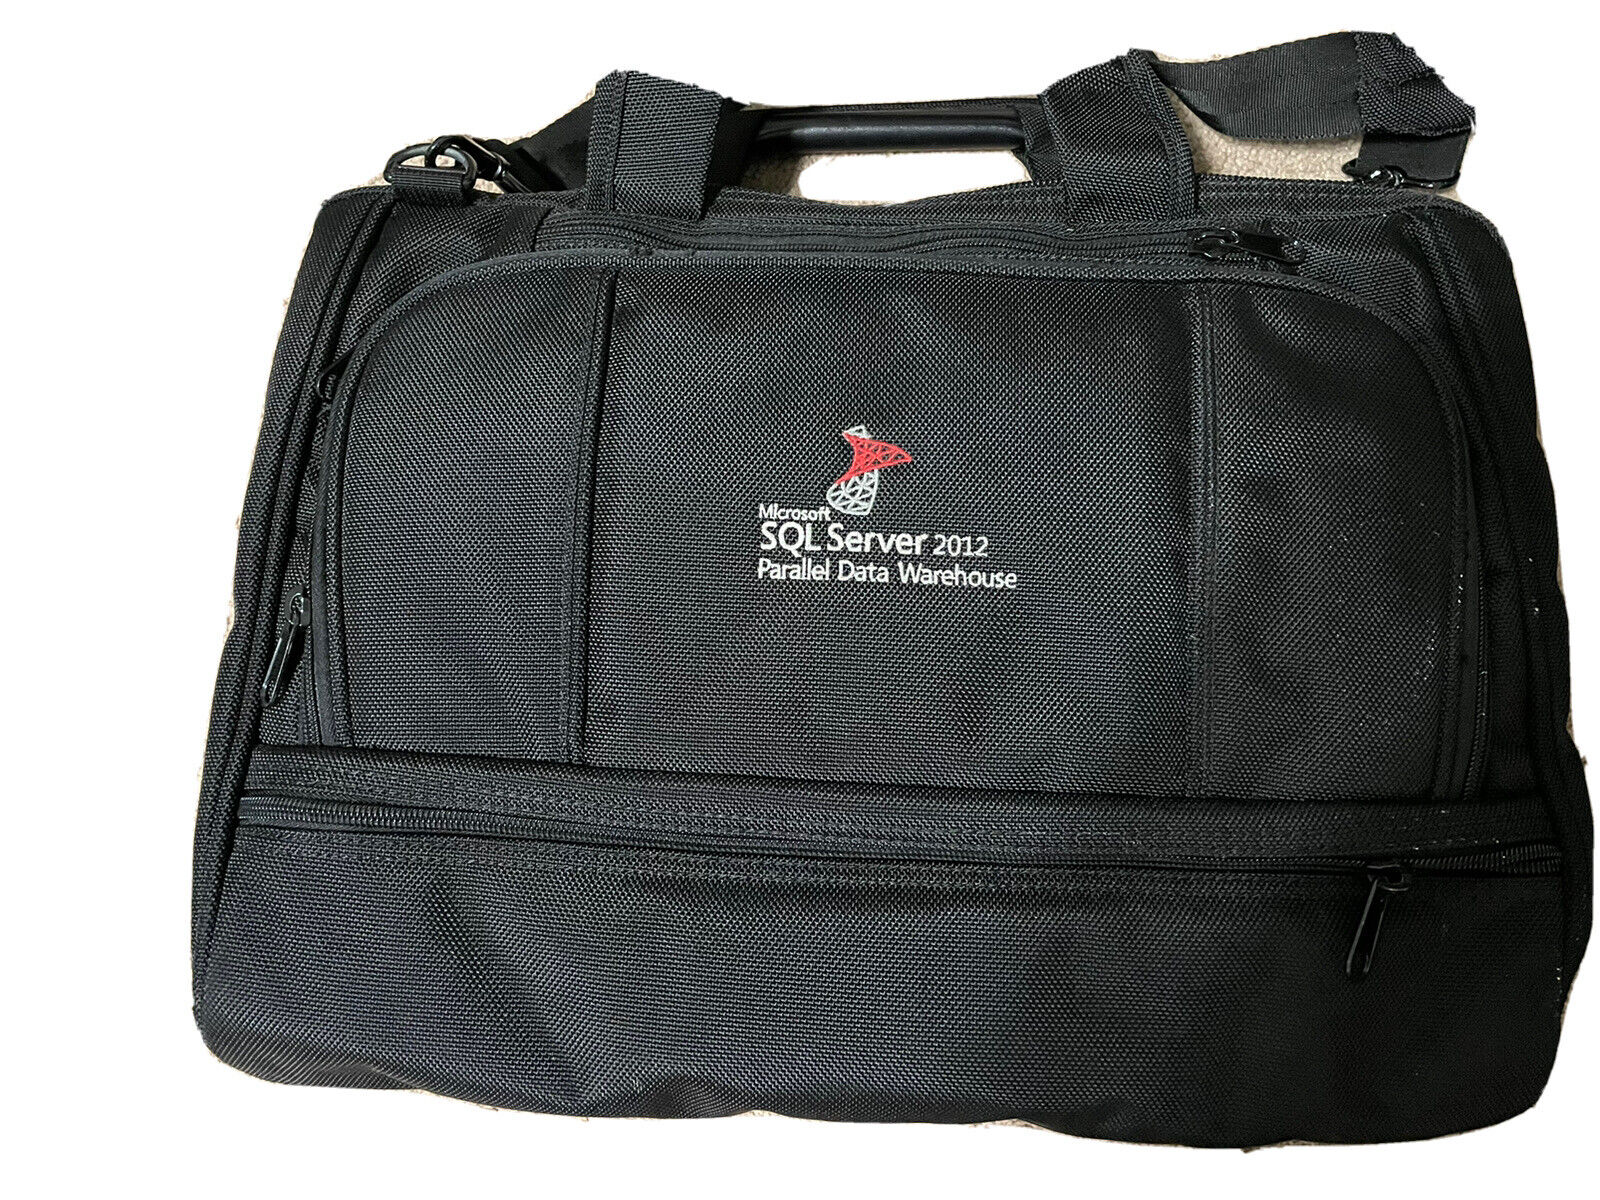 Microsoft Vintage Laptop Bag - SQL Server 2012 PDW Bag - Black With Strap